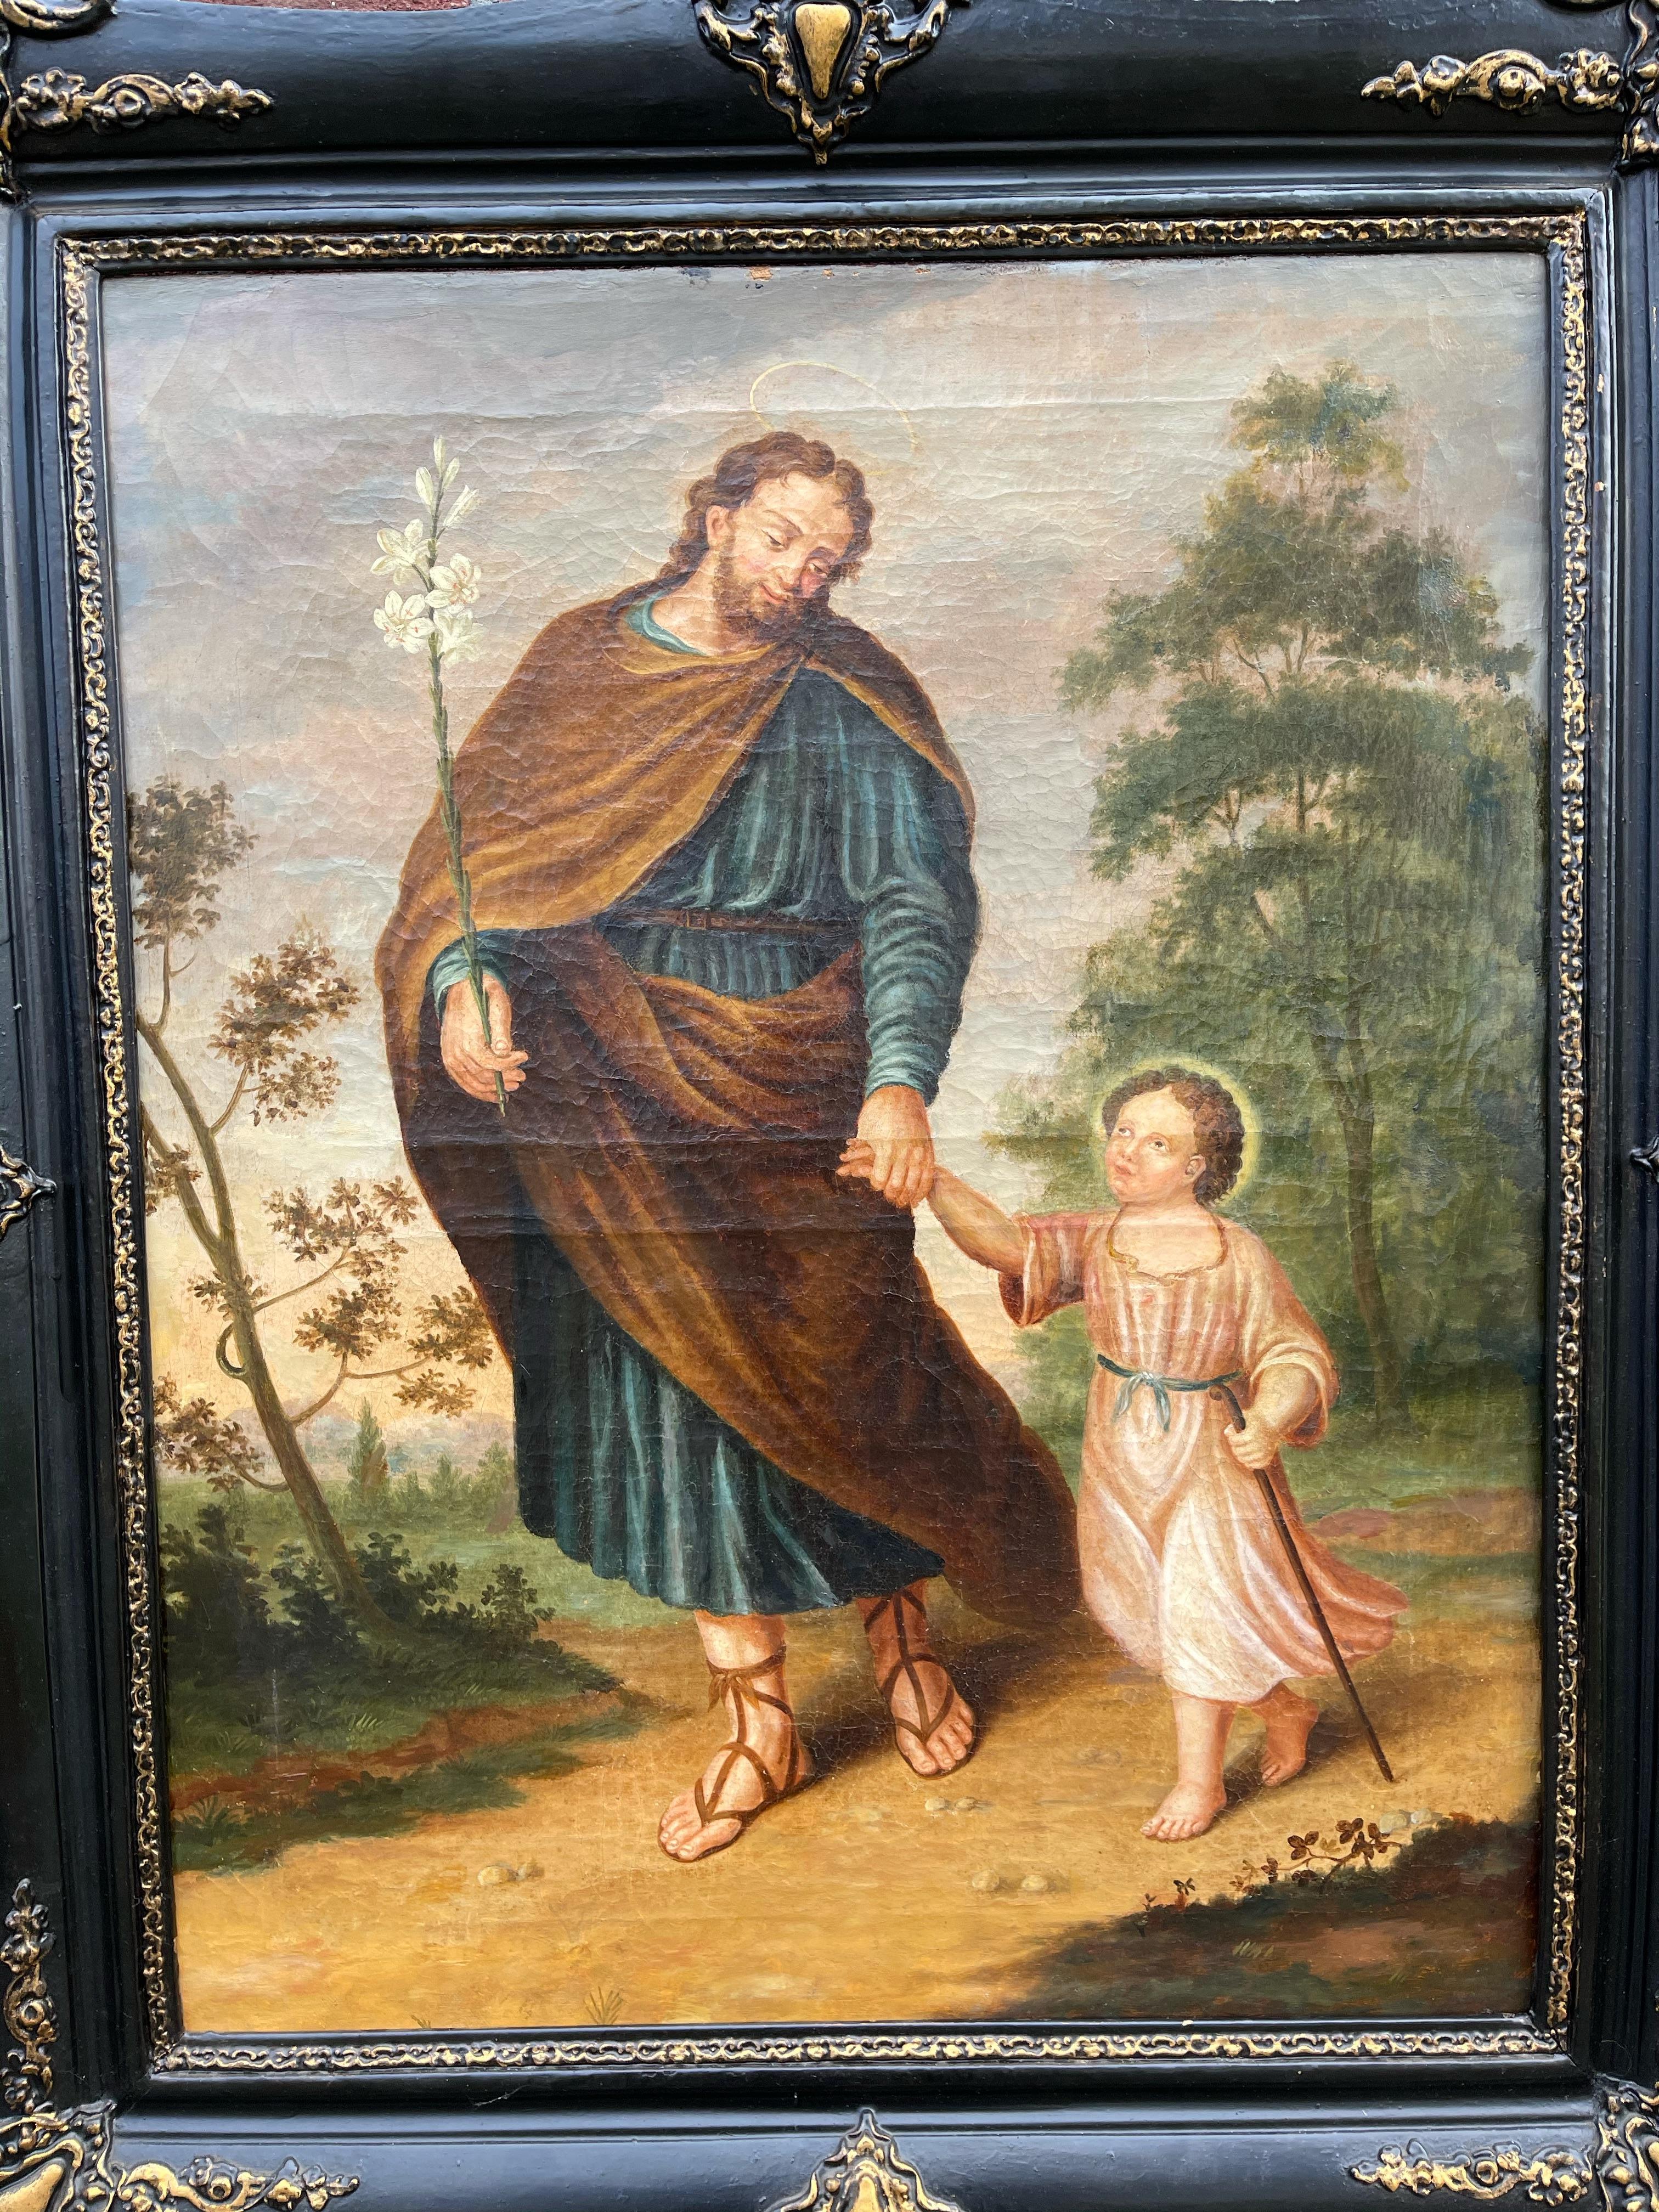 Œuvre d'art religieux ancienne, présentée dans son cadre antique d'origine.

Ce magnifique portrait édifiant de saint Joseph tenant la main de l'enfant Jésus est une huile sur toile datant du 18e siècle et de l'ère du renouveau baroque en Europe. Ce